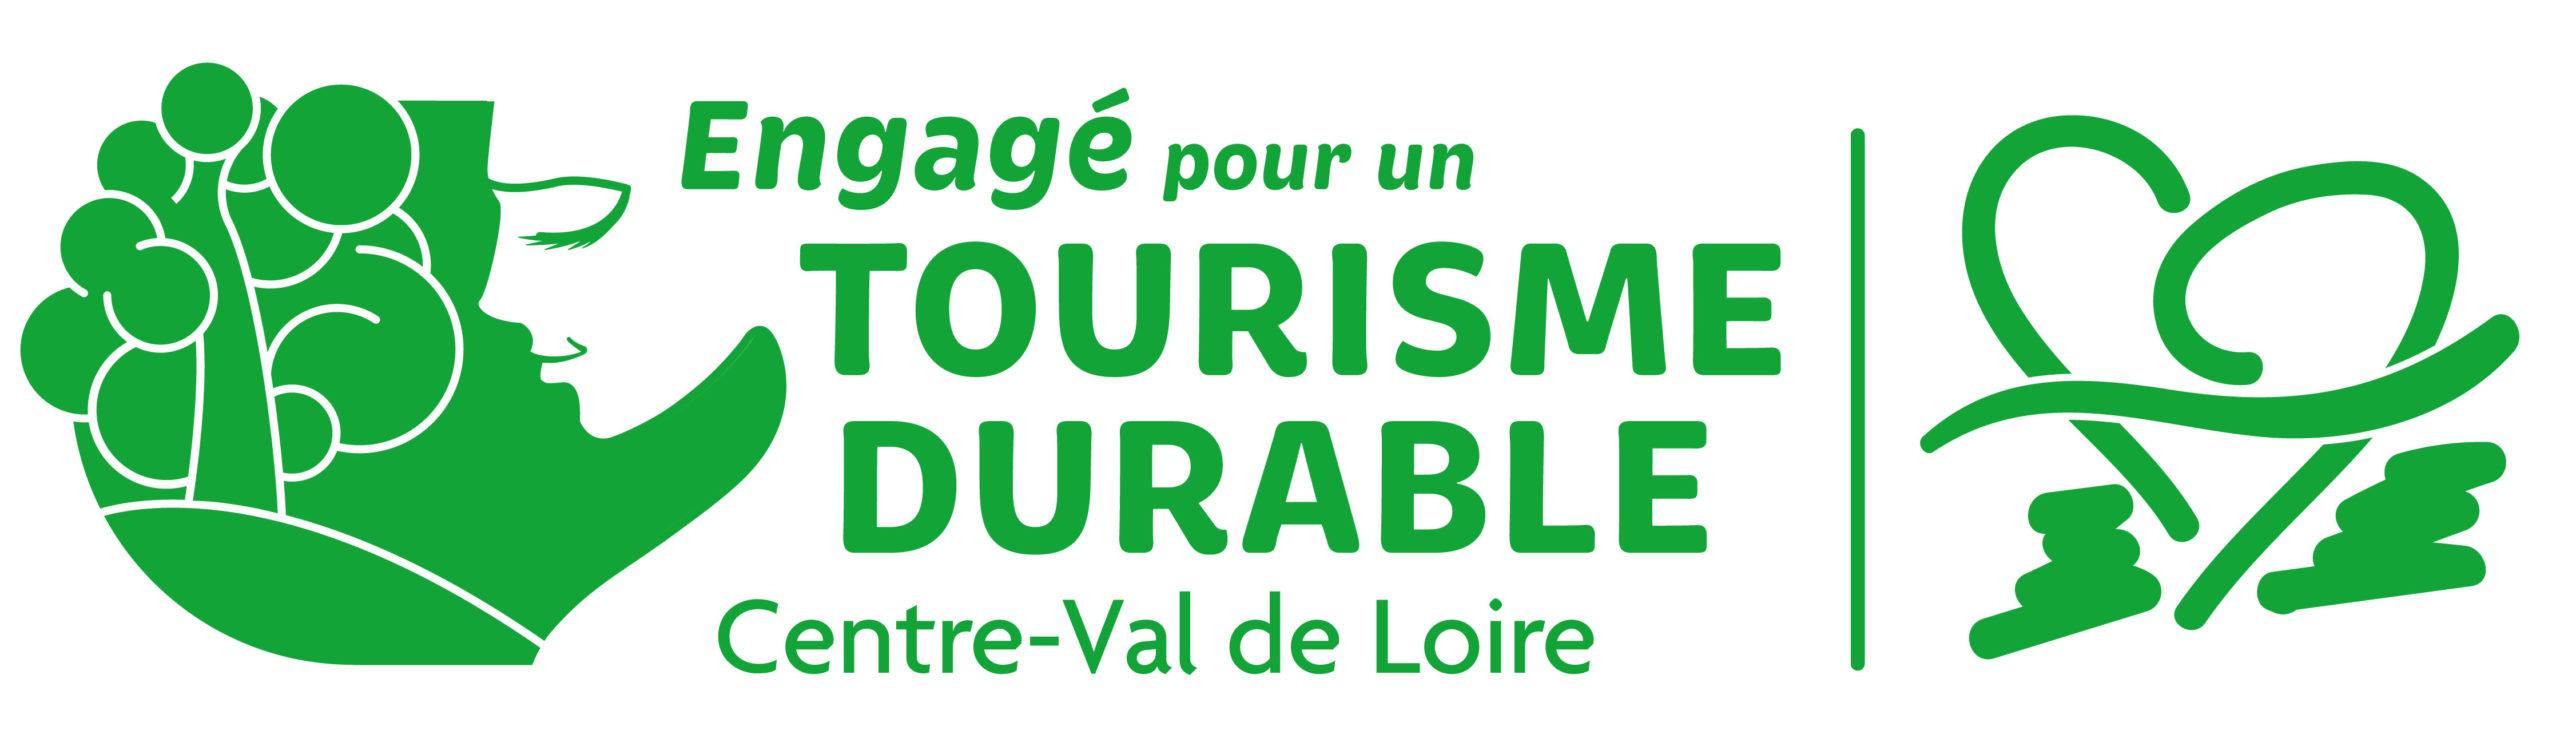 logo engagé pour un tourisme durable en région Centre Val de Loire